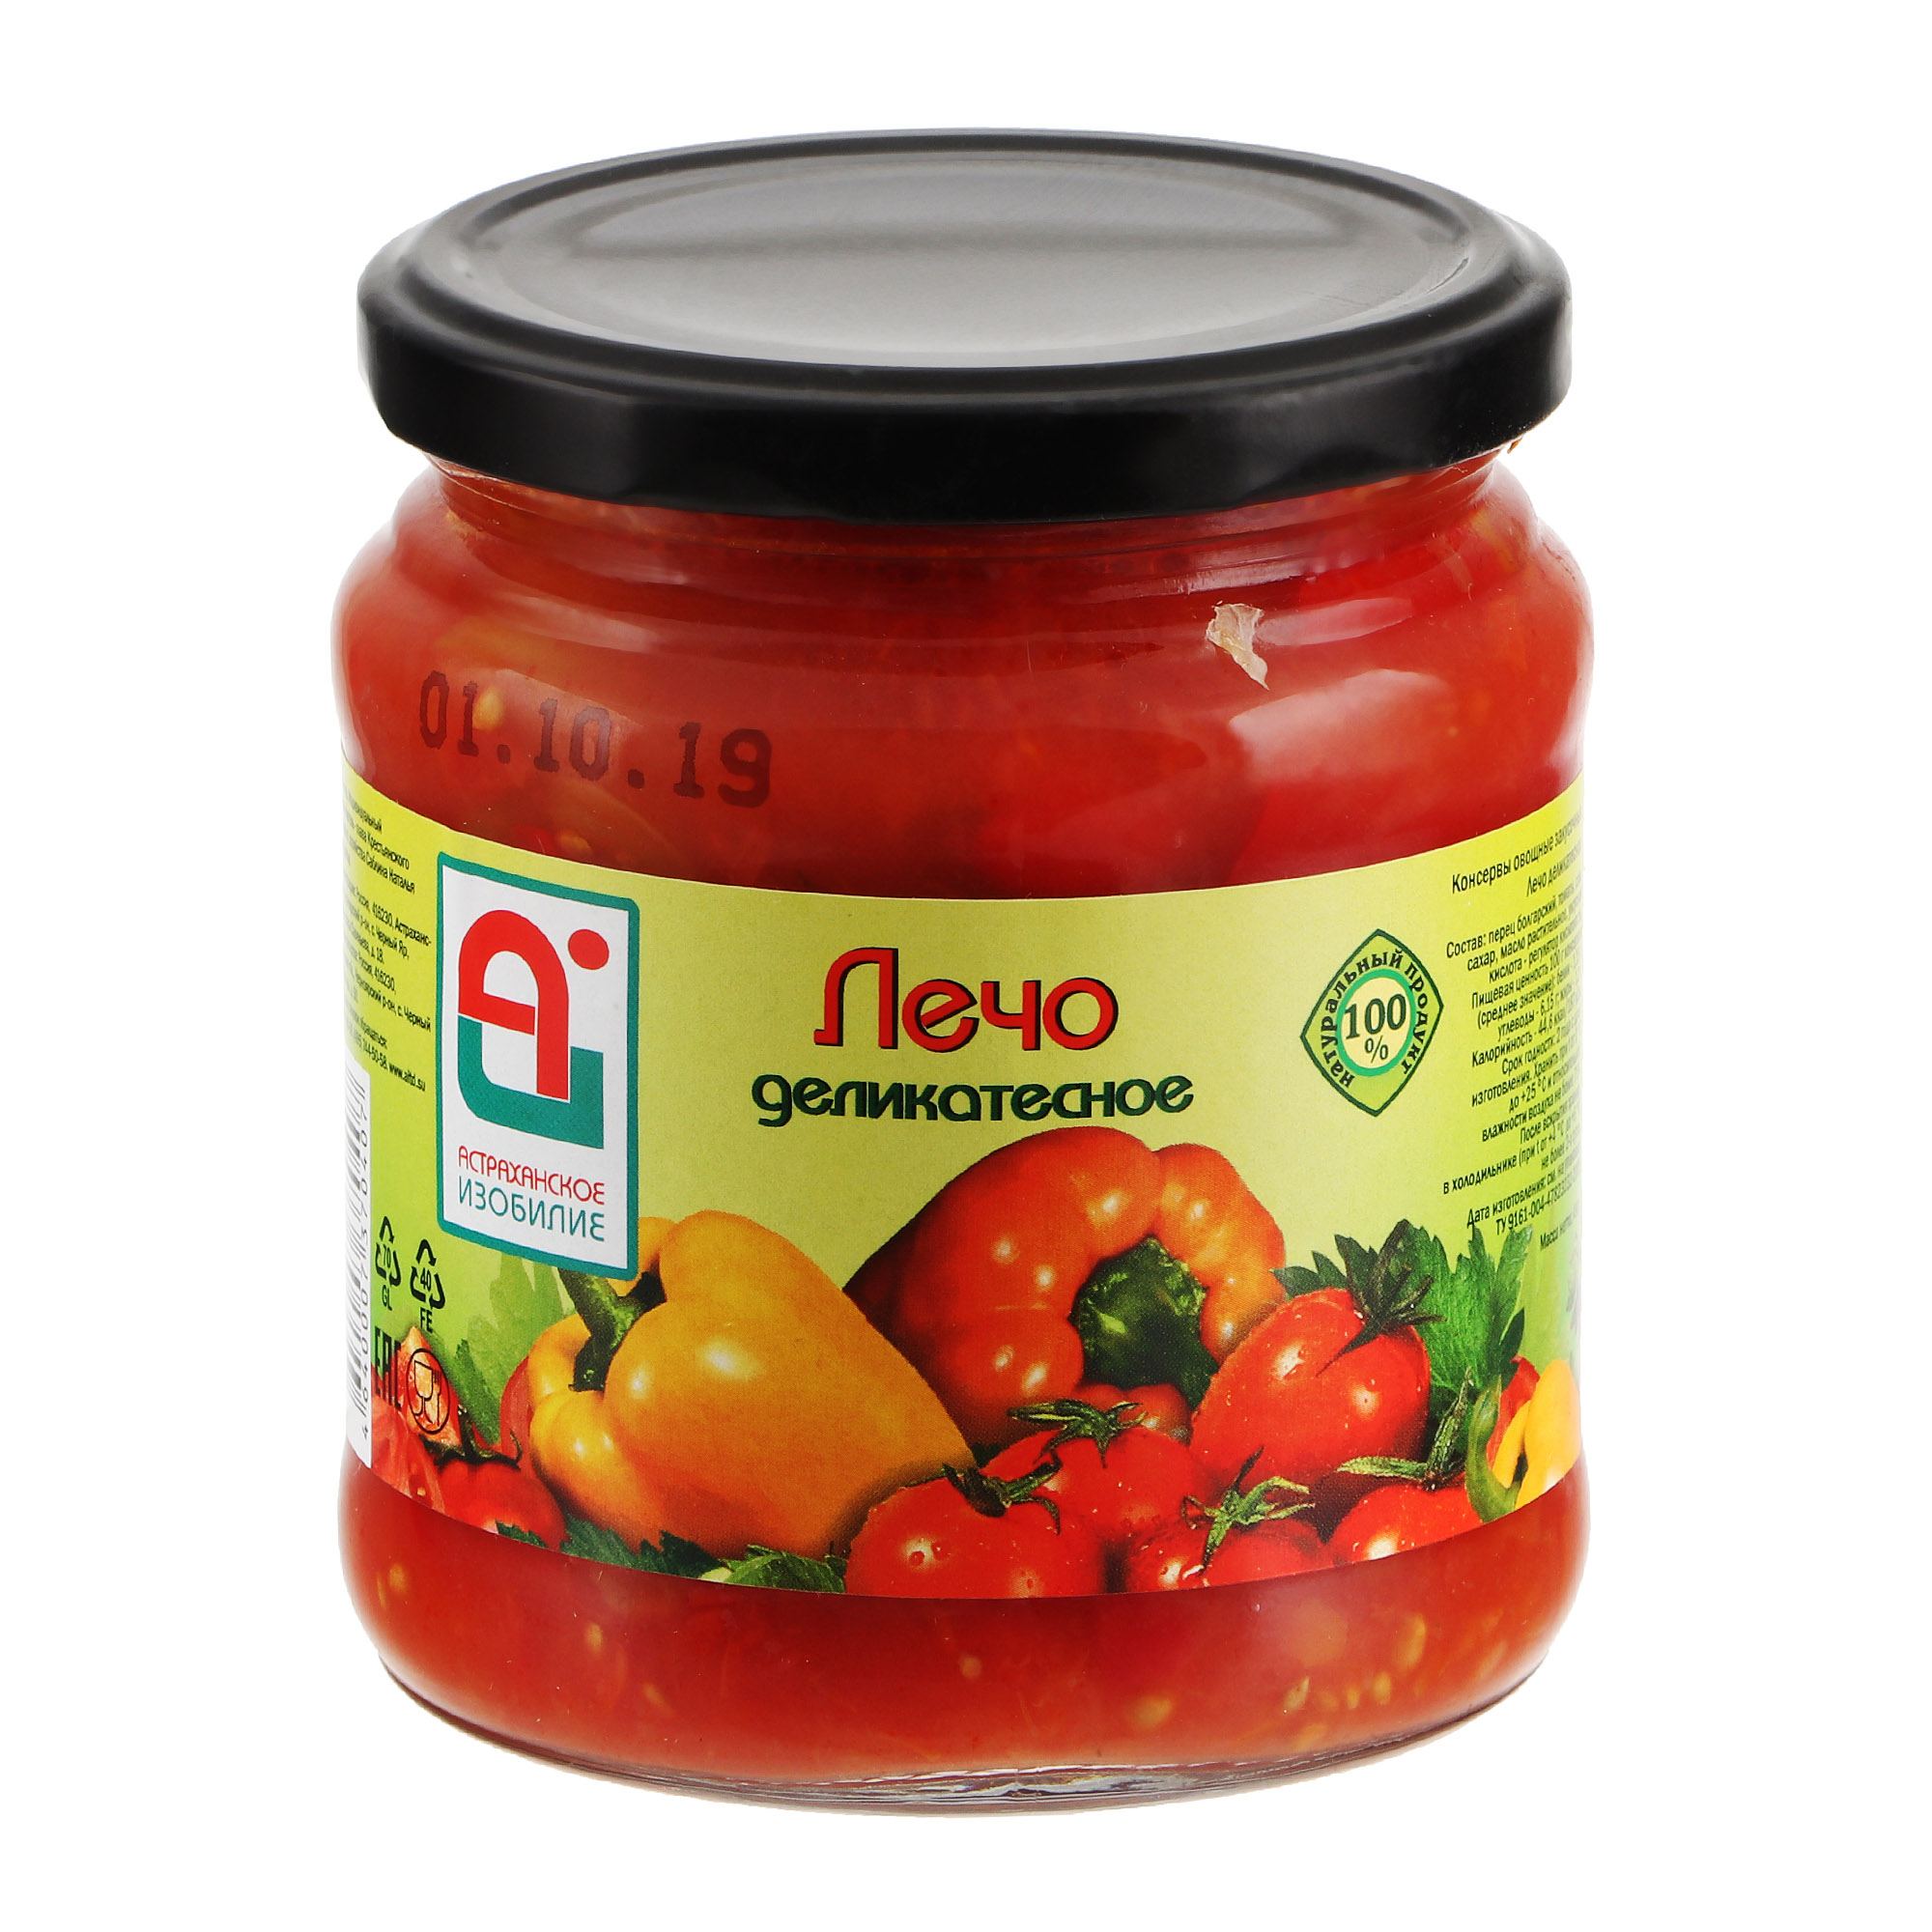 Лечо Астраханское Изобилие Деликатесное 480 г томаты консервированные астраханское изобилие 1 л